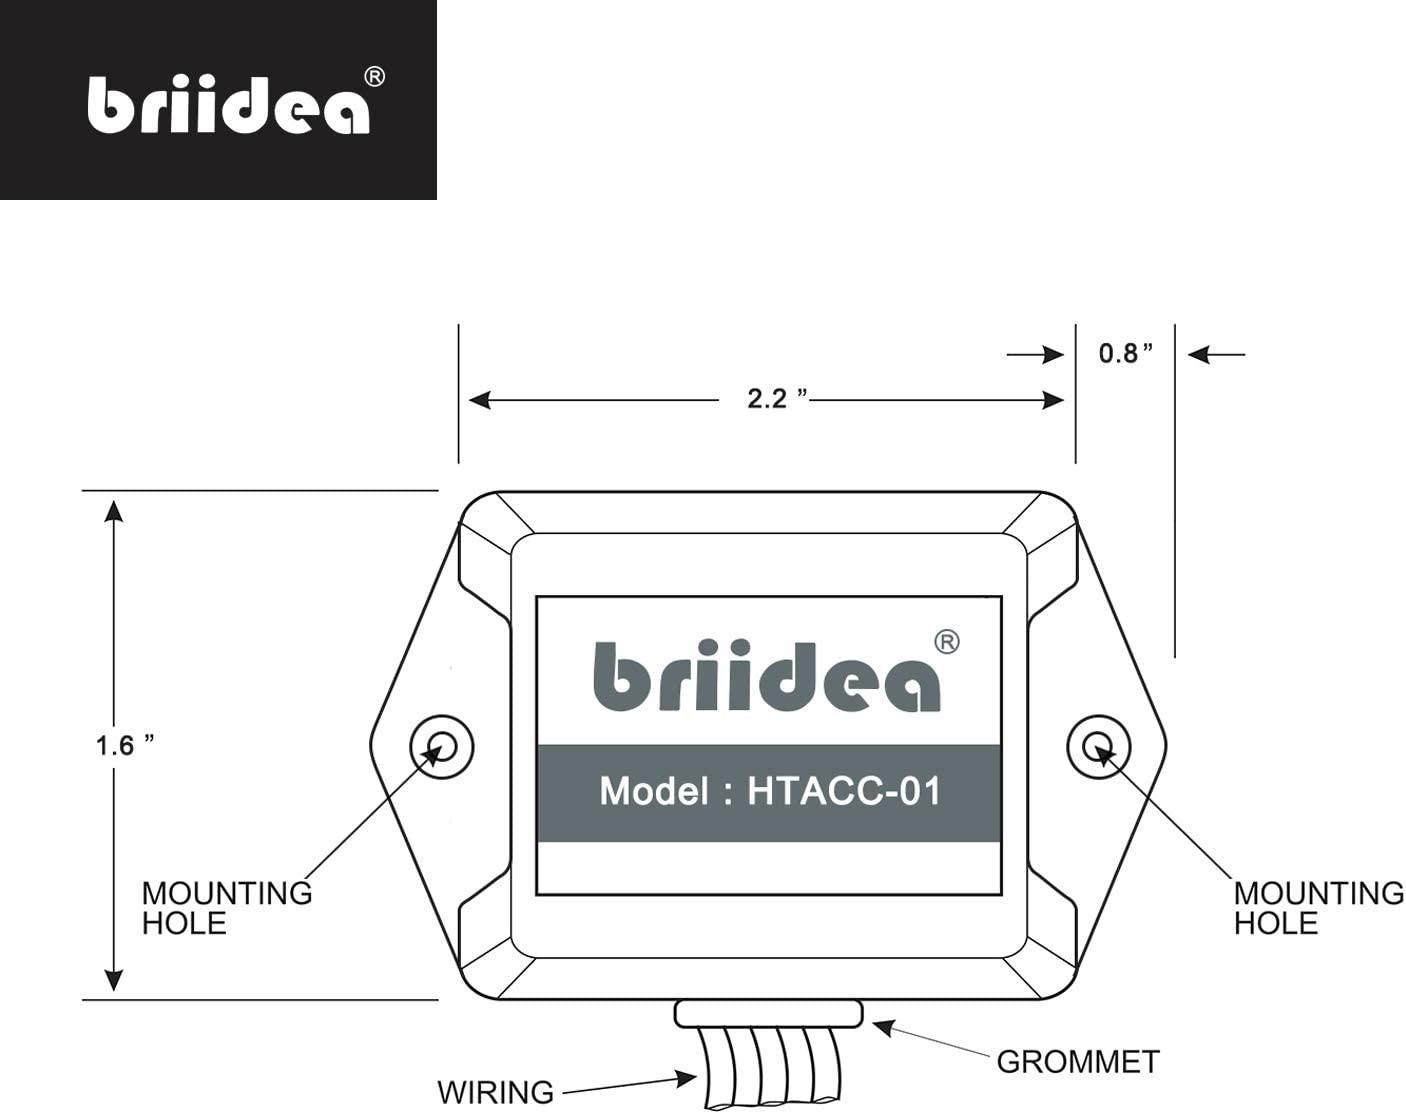 Add-A-Wire Accessory, Briidea Common Wire Kit for All 24VAC Thermostats (4 to 5 Wires), White - briidea